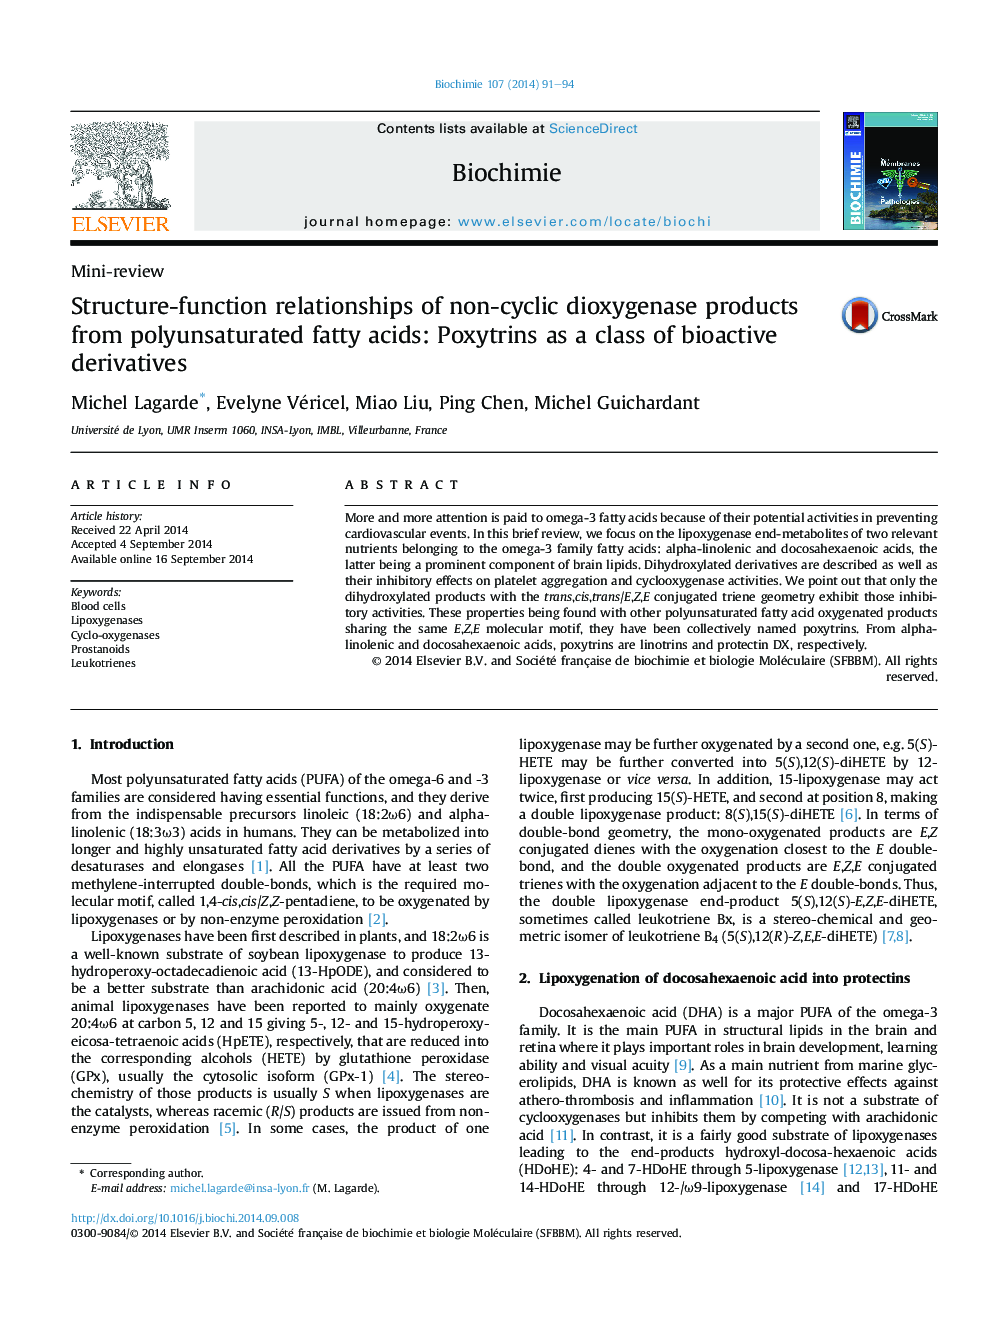 ساختار-عملکرد روابط محصولات دی اکسیژناز غیر سیکل از اسیدهای چرب اشباع نشده: پوکیترین ها به عنوان یک دسته از مشتقات زیست فعال 